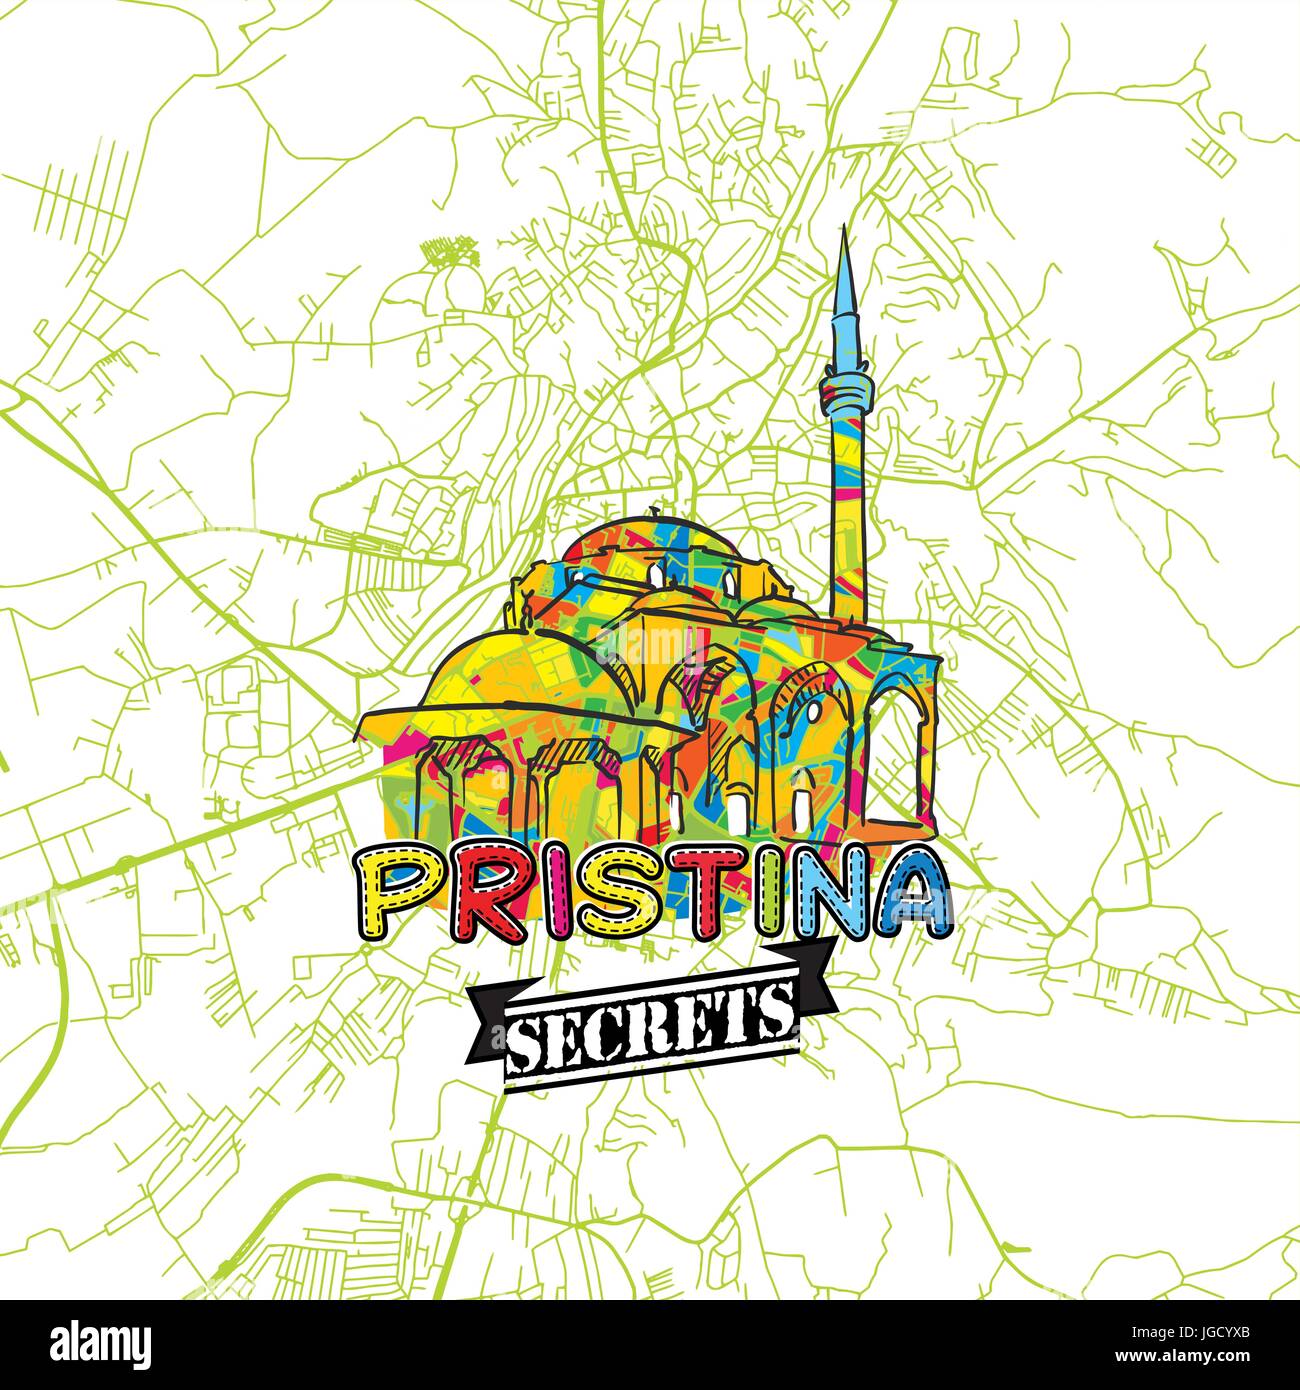 Pristina reisen Geheimnisse Art Map für die Zuordnung von Experten und Reiseführer. Handgemachte Stadt Logo, Typo-Abzeichen und Hand gezeichnete Vektor-Bild an der Spitze sind gruppiert eine Stock Vektor